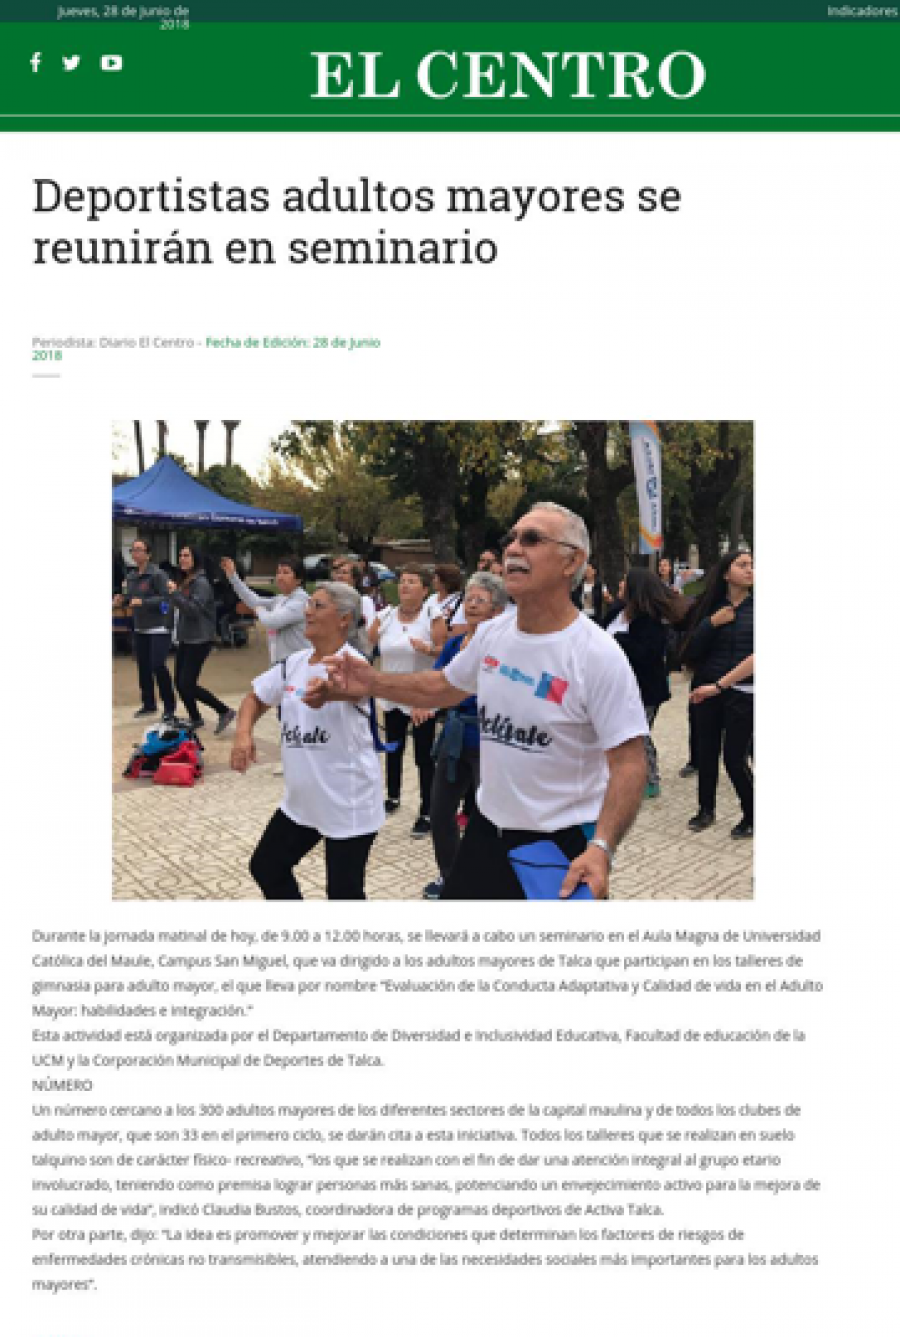 27 de junio en Diario El Centro: “Deportistas adultos mayores se reunirán en seminario”